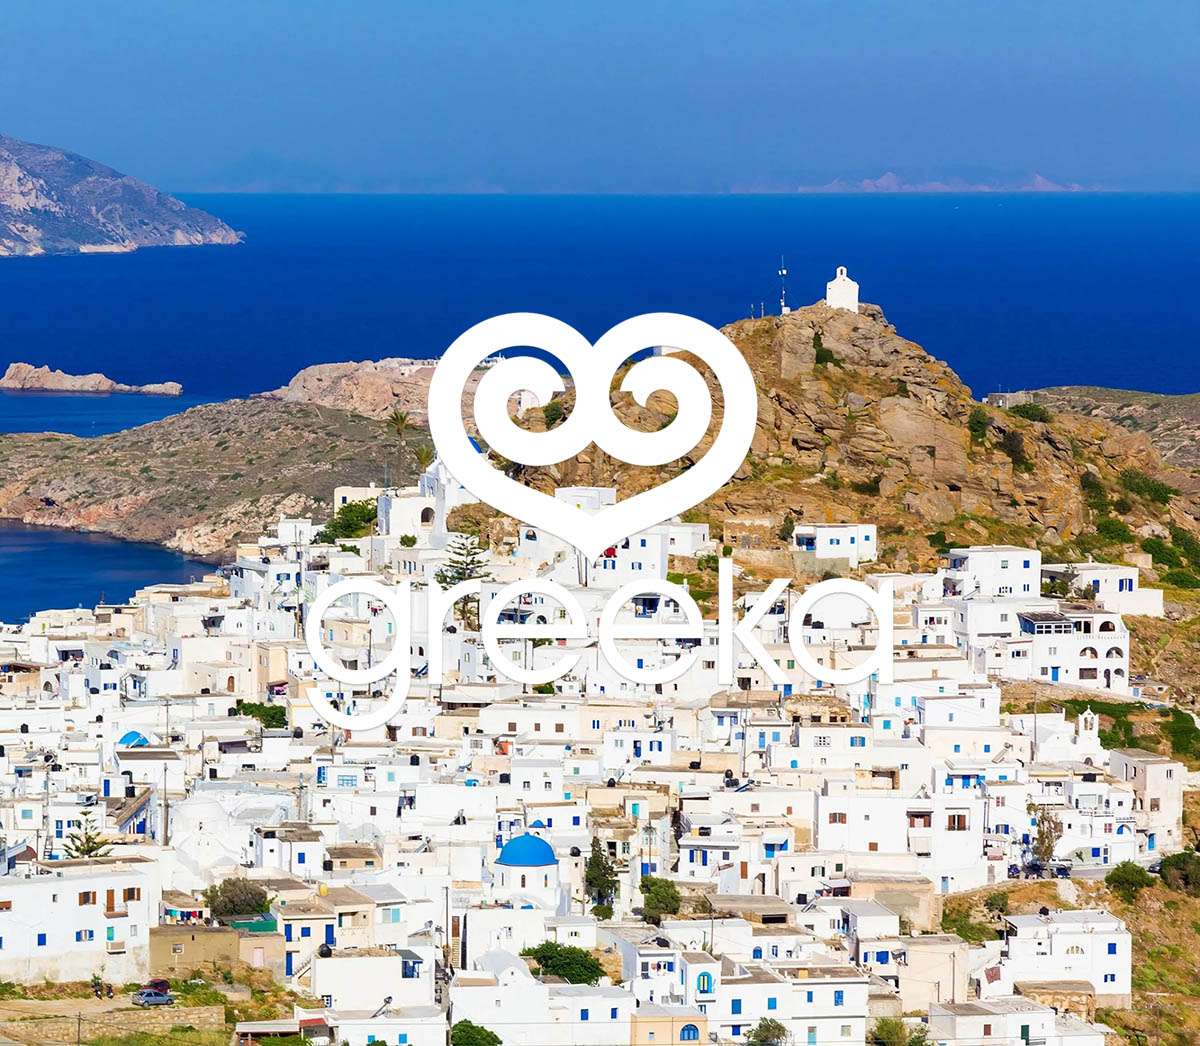 why should i visit greece